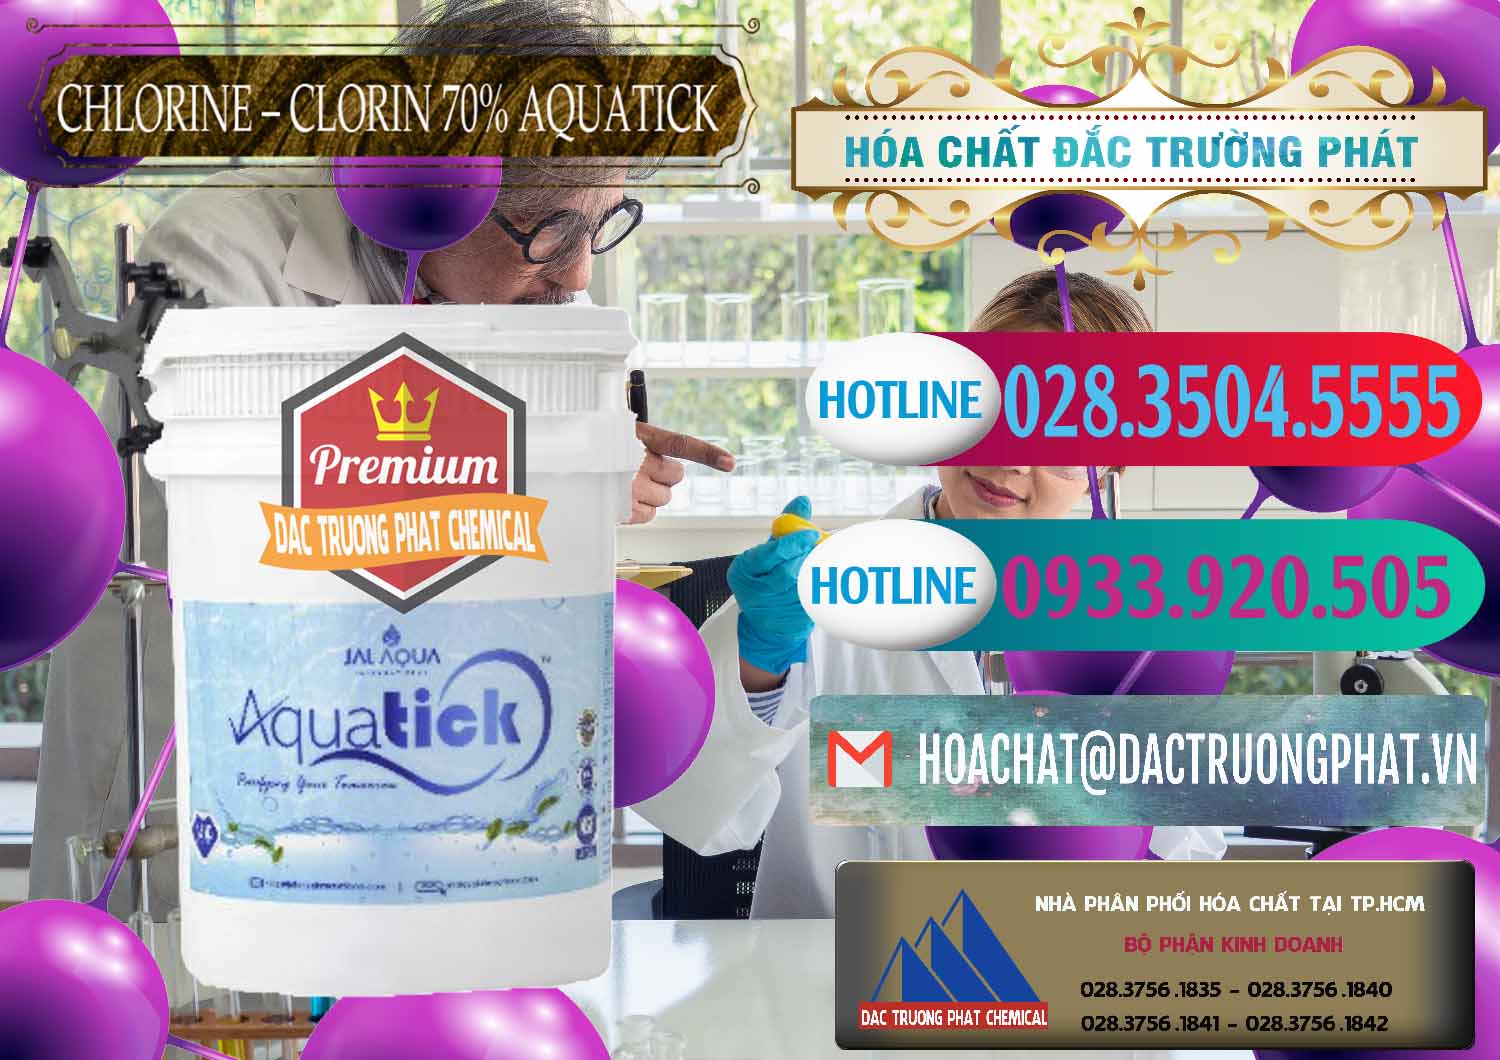 Cty kinh doanh & bán Chlorine – Clorin 70% Aquatick Thùng Cao Jal Aqua Ấn Độ India - 0237 - Đơn vị kinh doanh - phân phối hóa chất tại TP.HCM - truongphat.vn